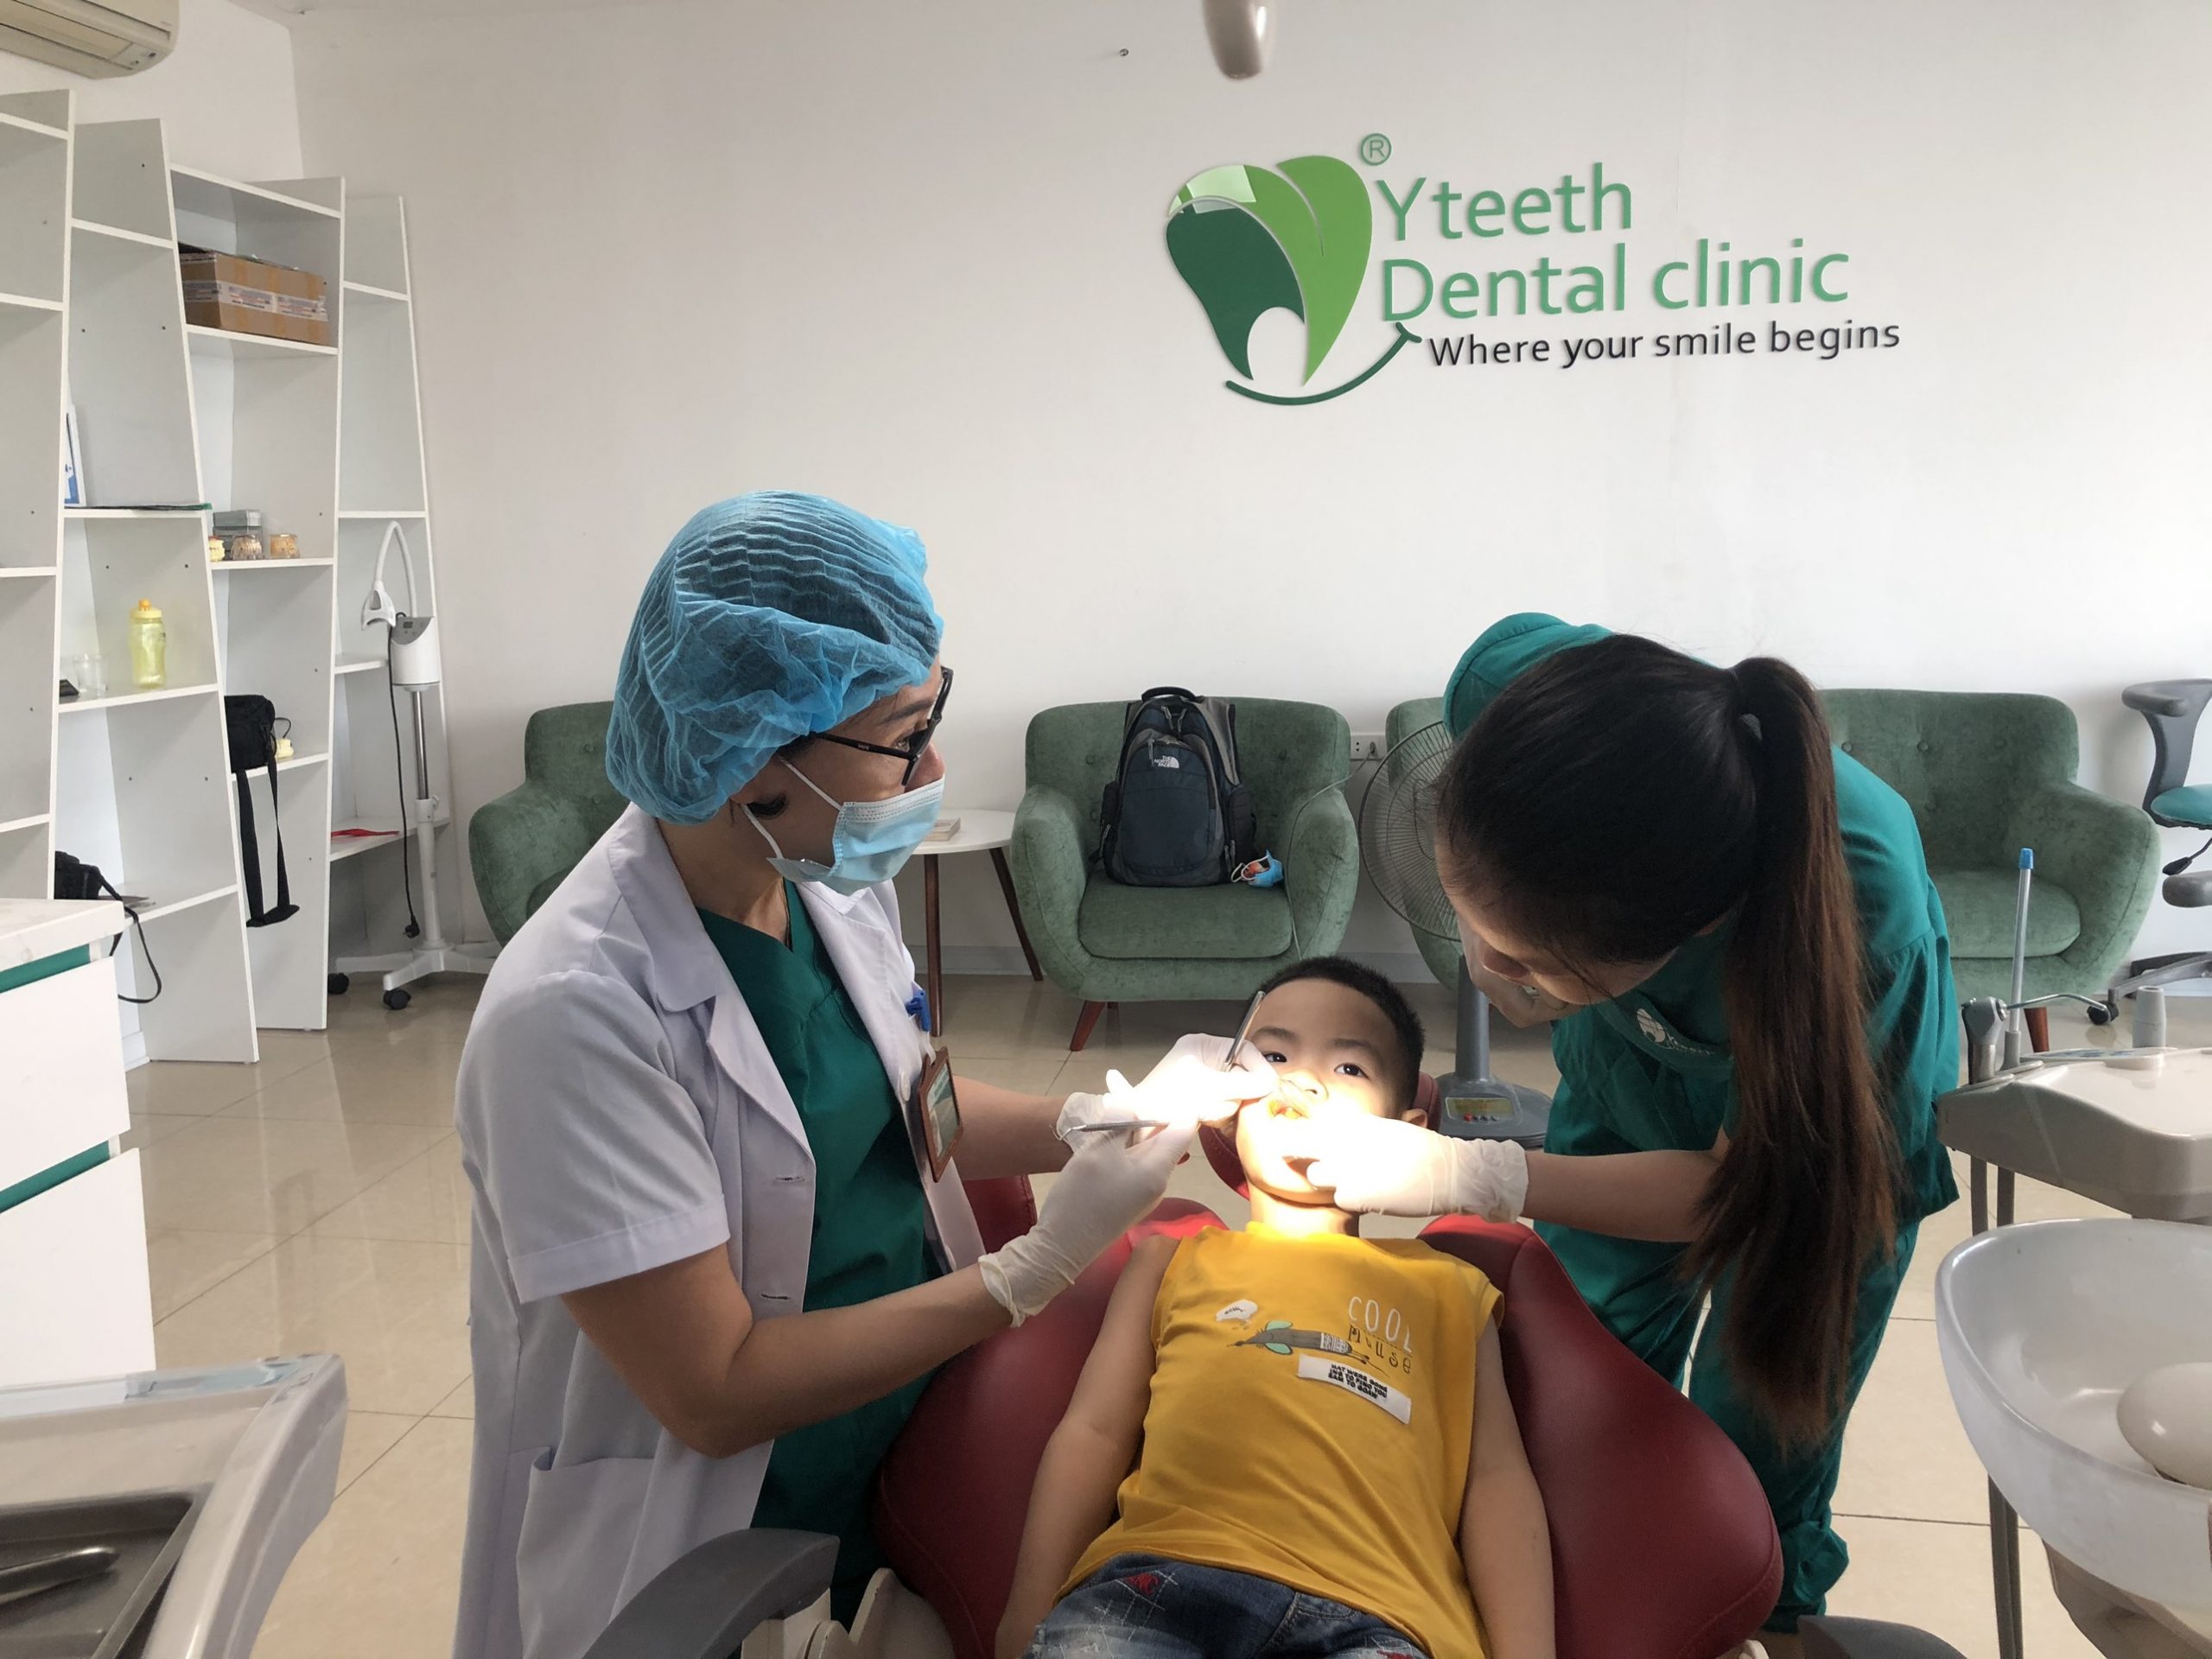 Niềng răng trẻ em thời gian đeo hàm duy trì sẽ ngắn hơn - Bác sĩ Hải Yến Yteeth